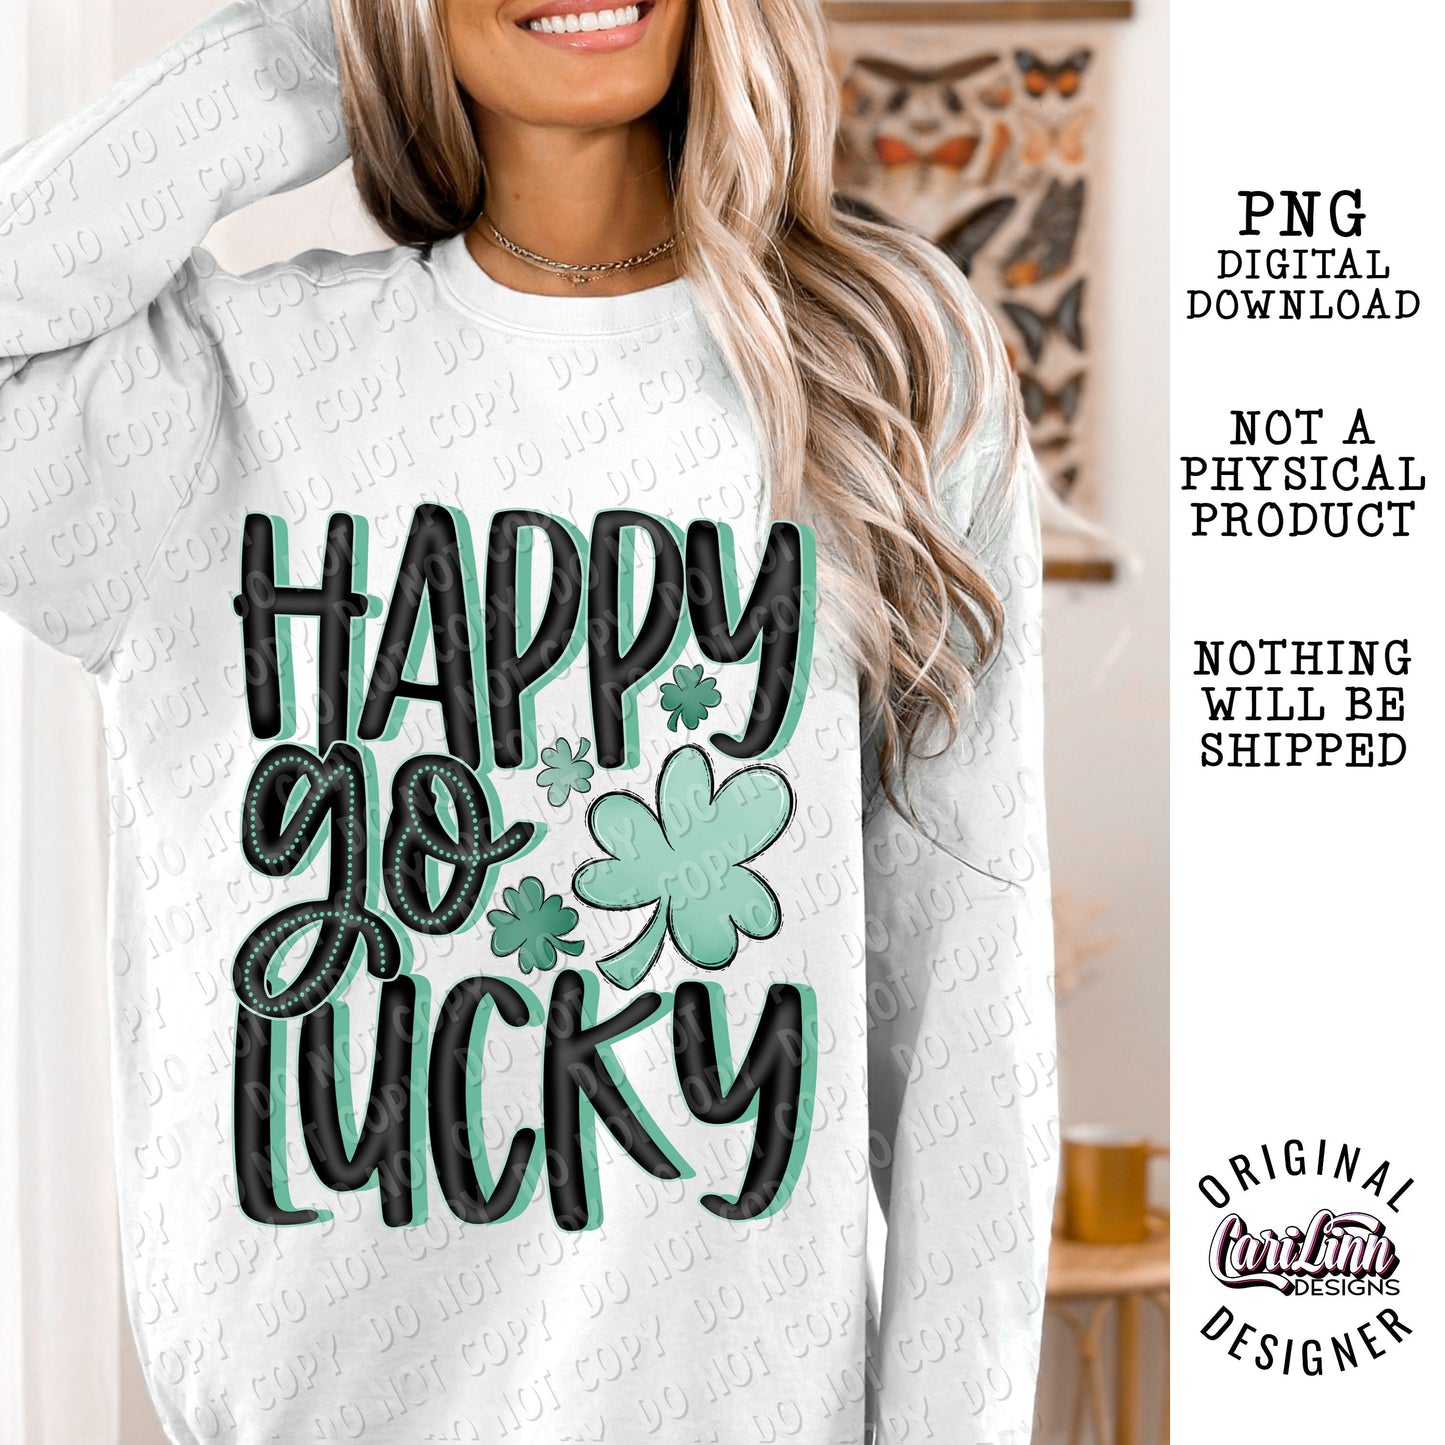 Happy Go Lucky, Original Designer, PNG Digital Download for Sublimation, DTF, DTG